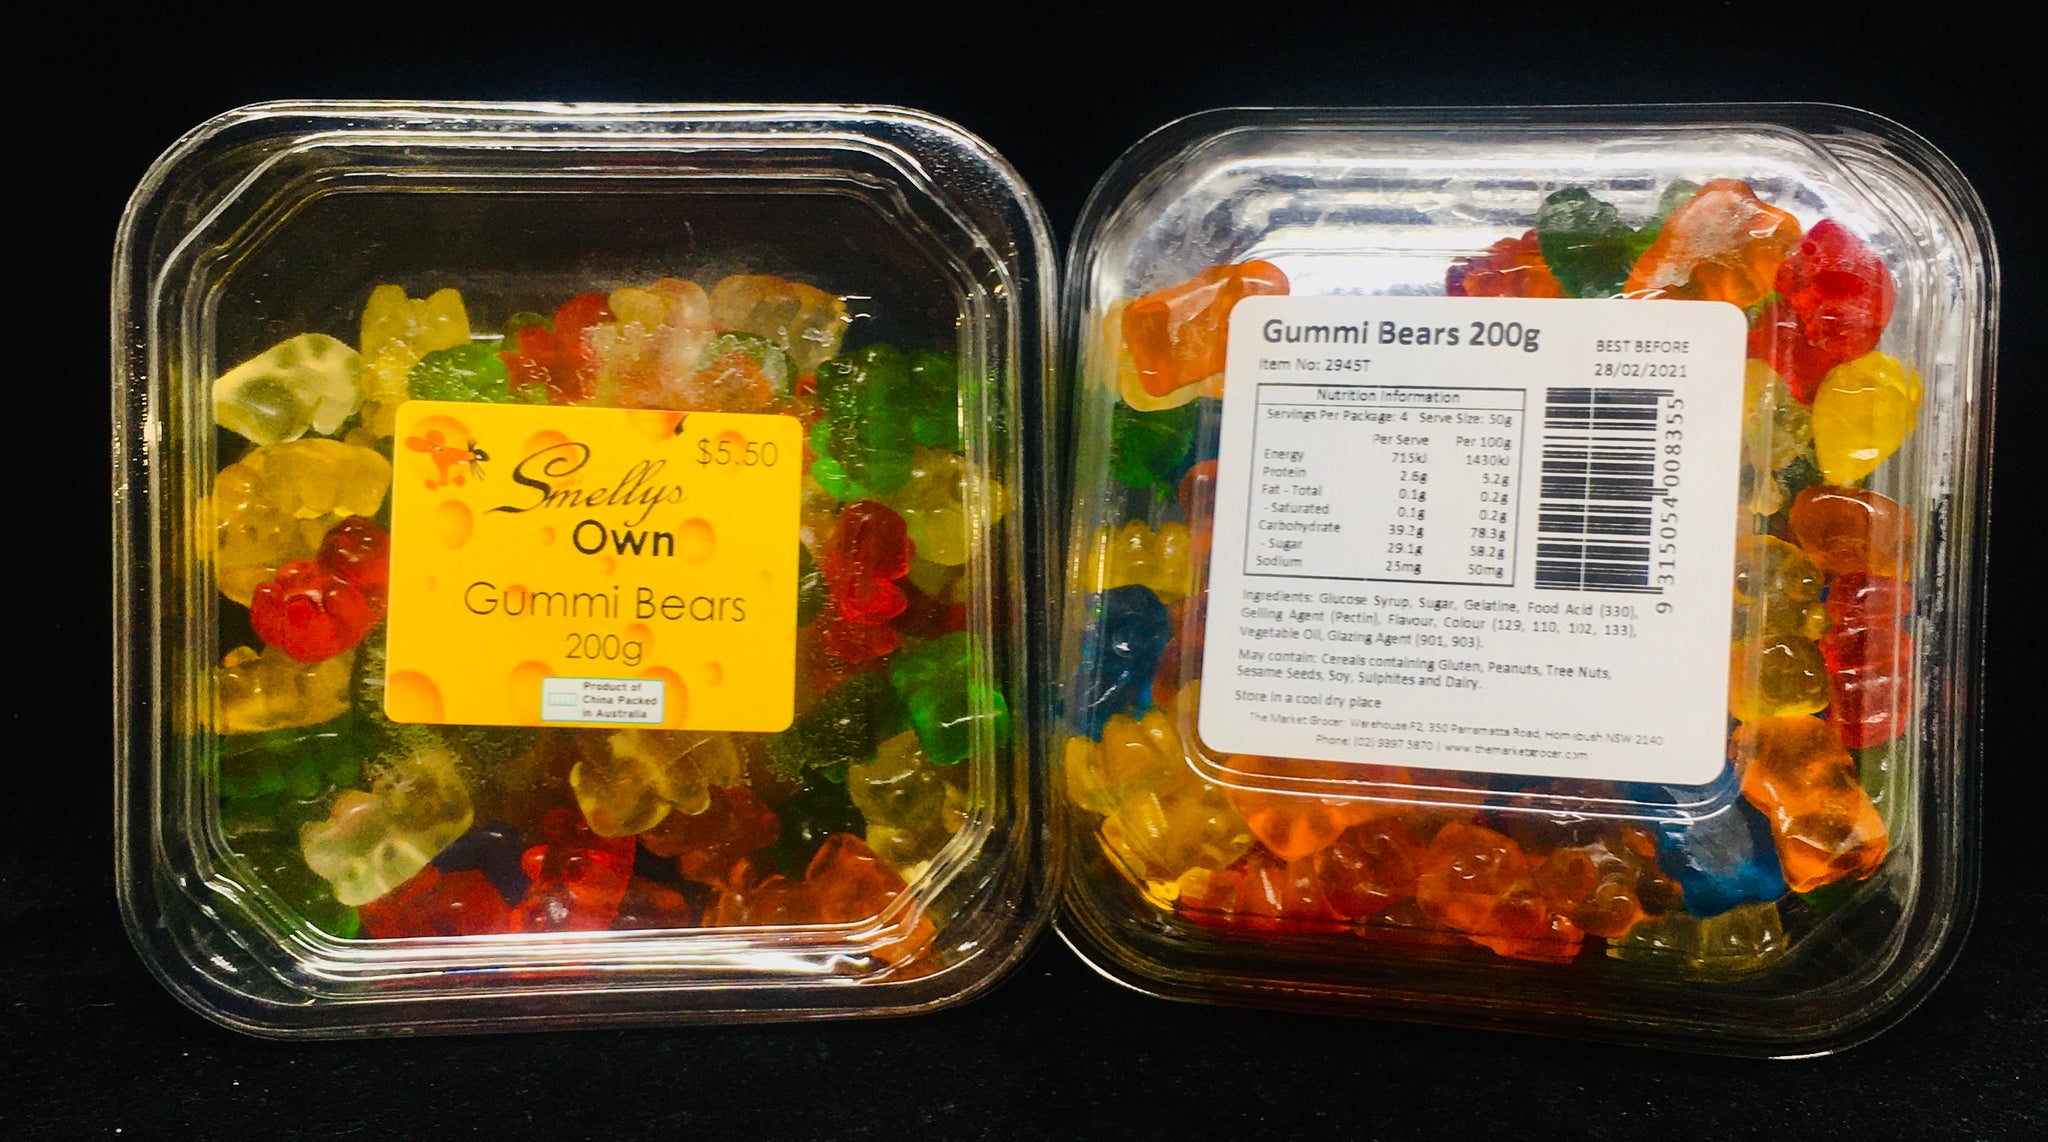 Smelly's Own - Gummi Bears